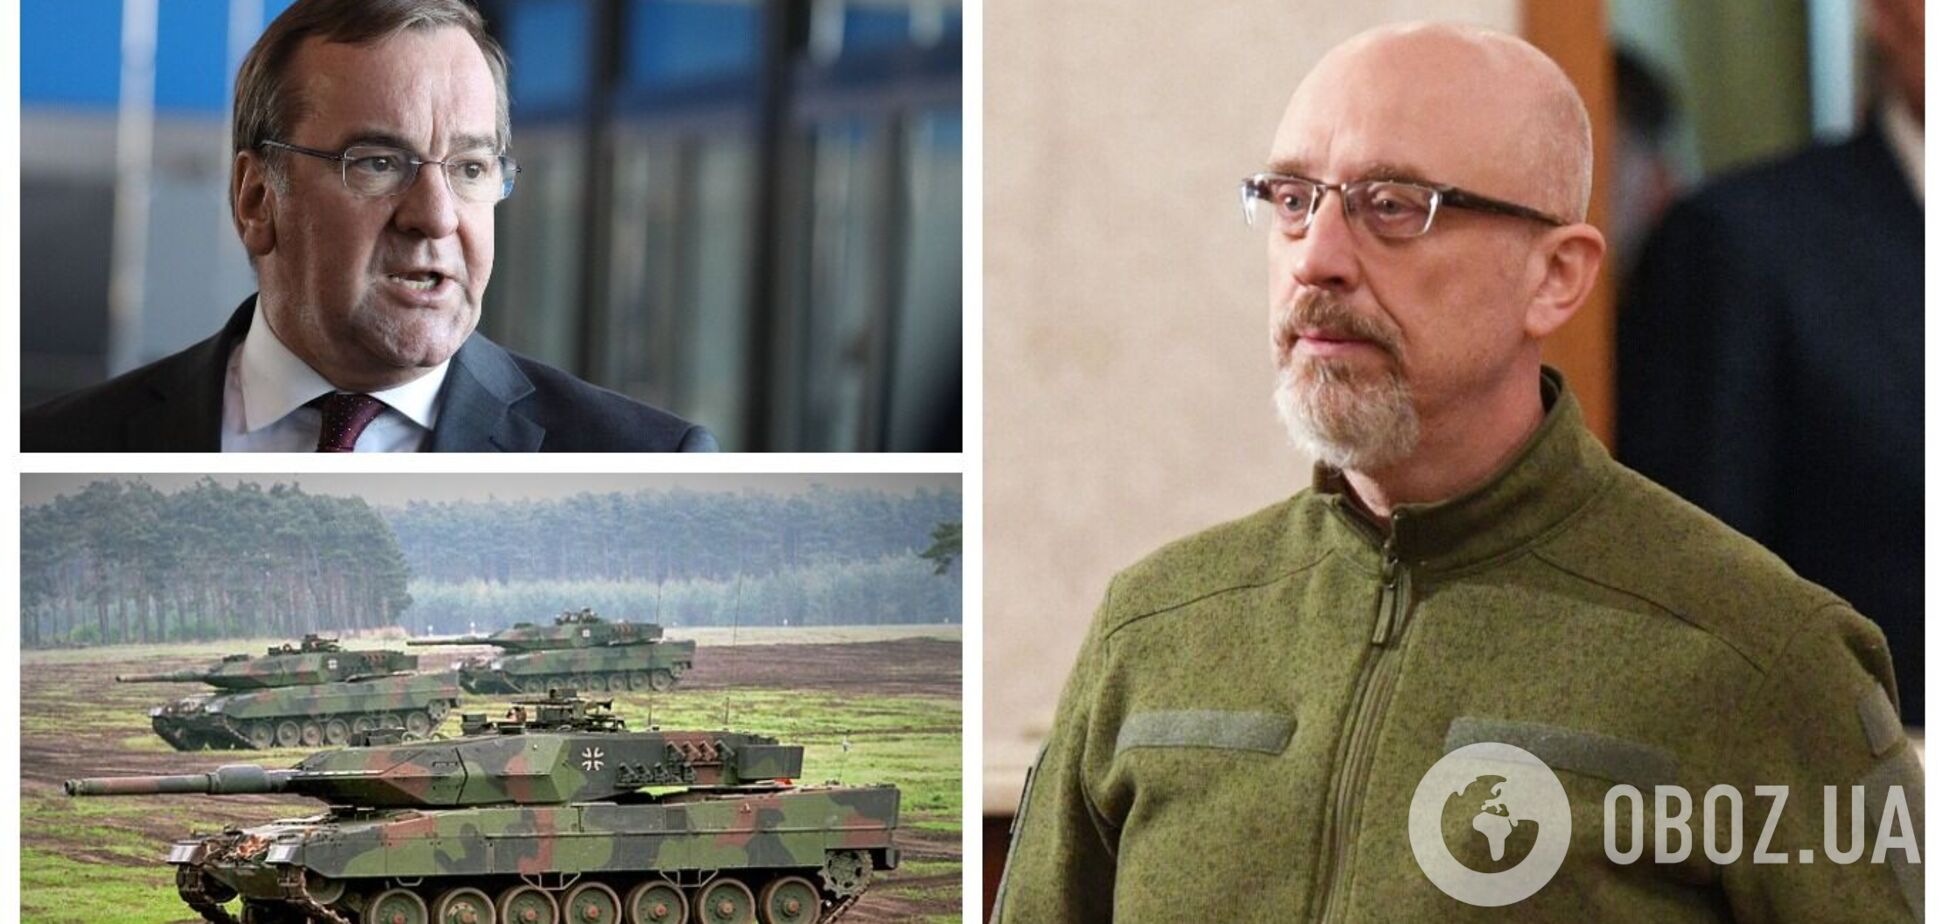 Резников заявил об откровенном разговоре с министром обороны Германии о танках Leopard 2